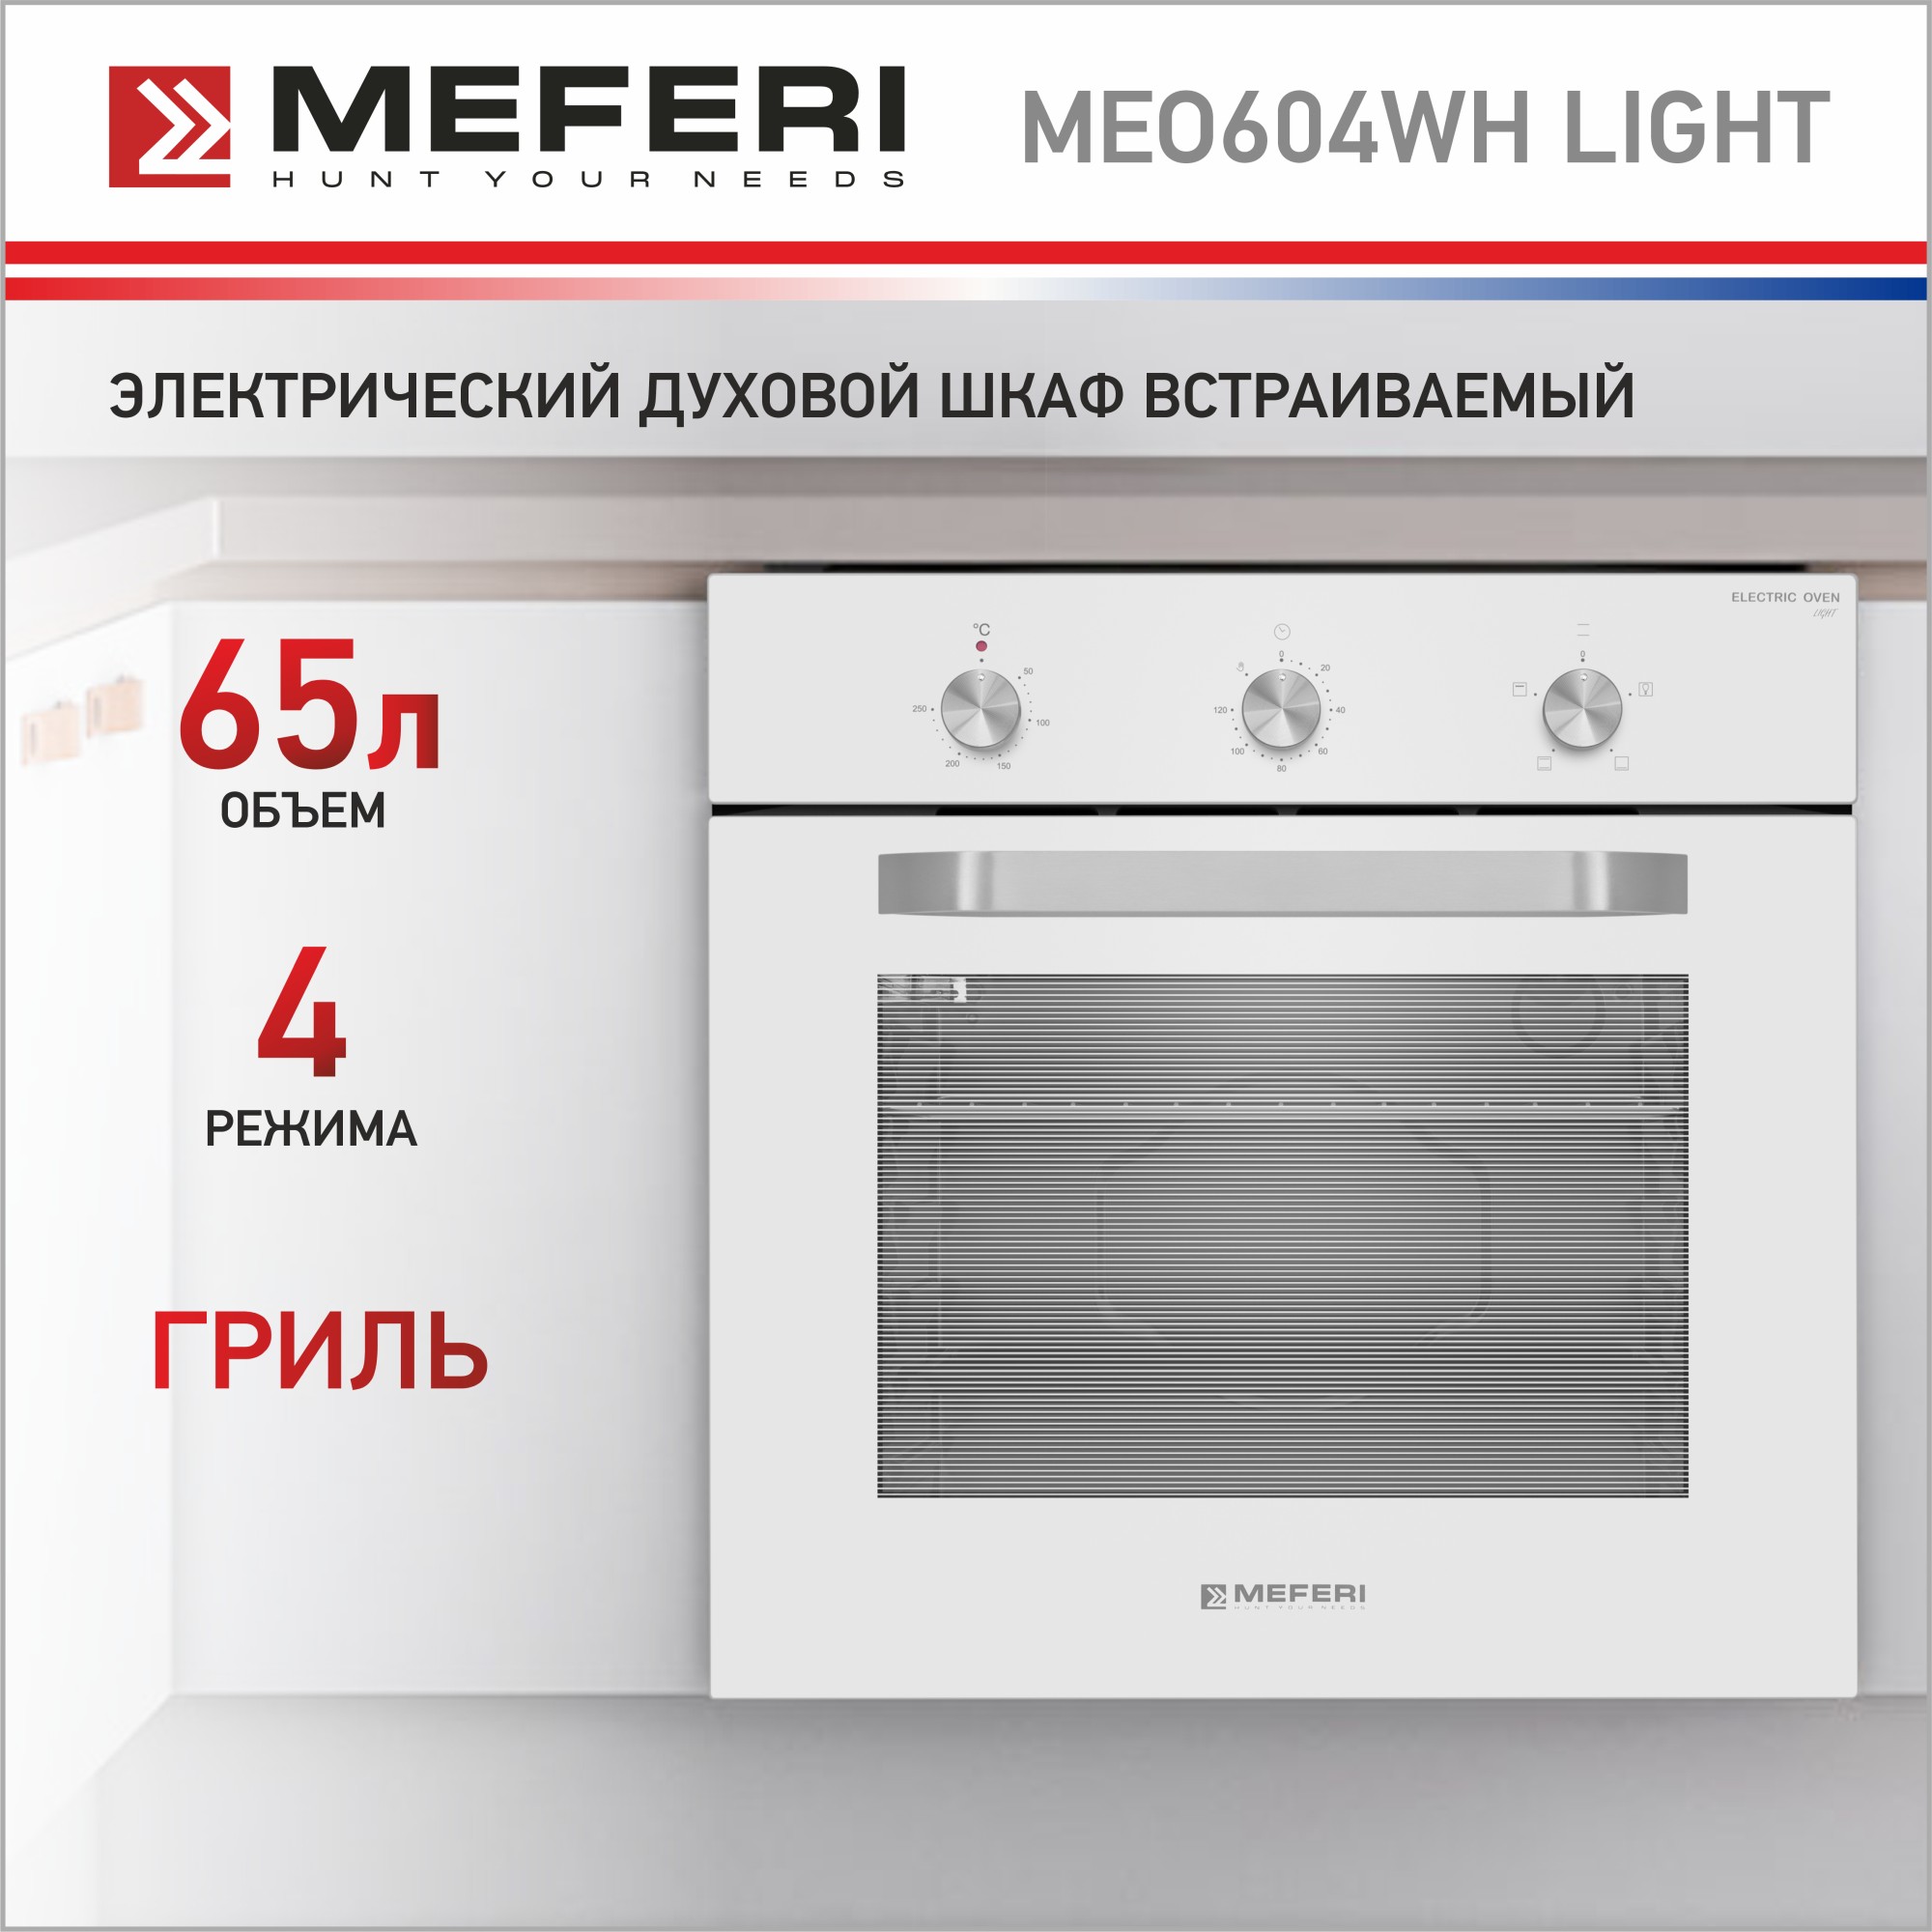 Электрический духовой шкаф MEFERI MEO604WH LIGHT электрический духовой шкаф meferi meo604wh light